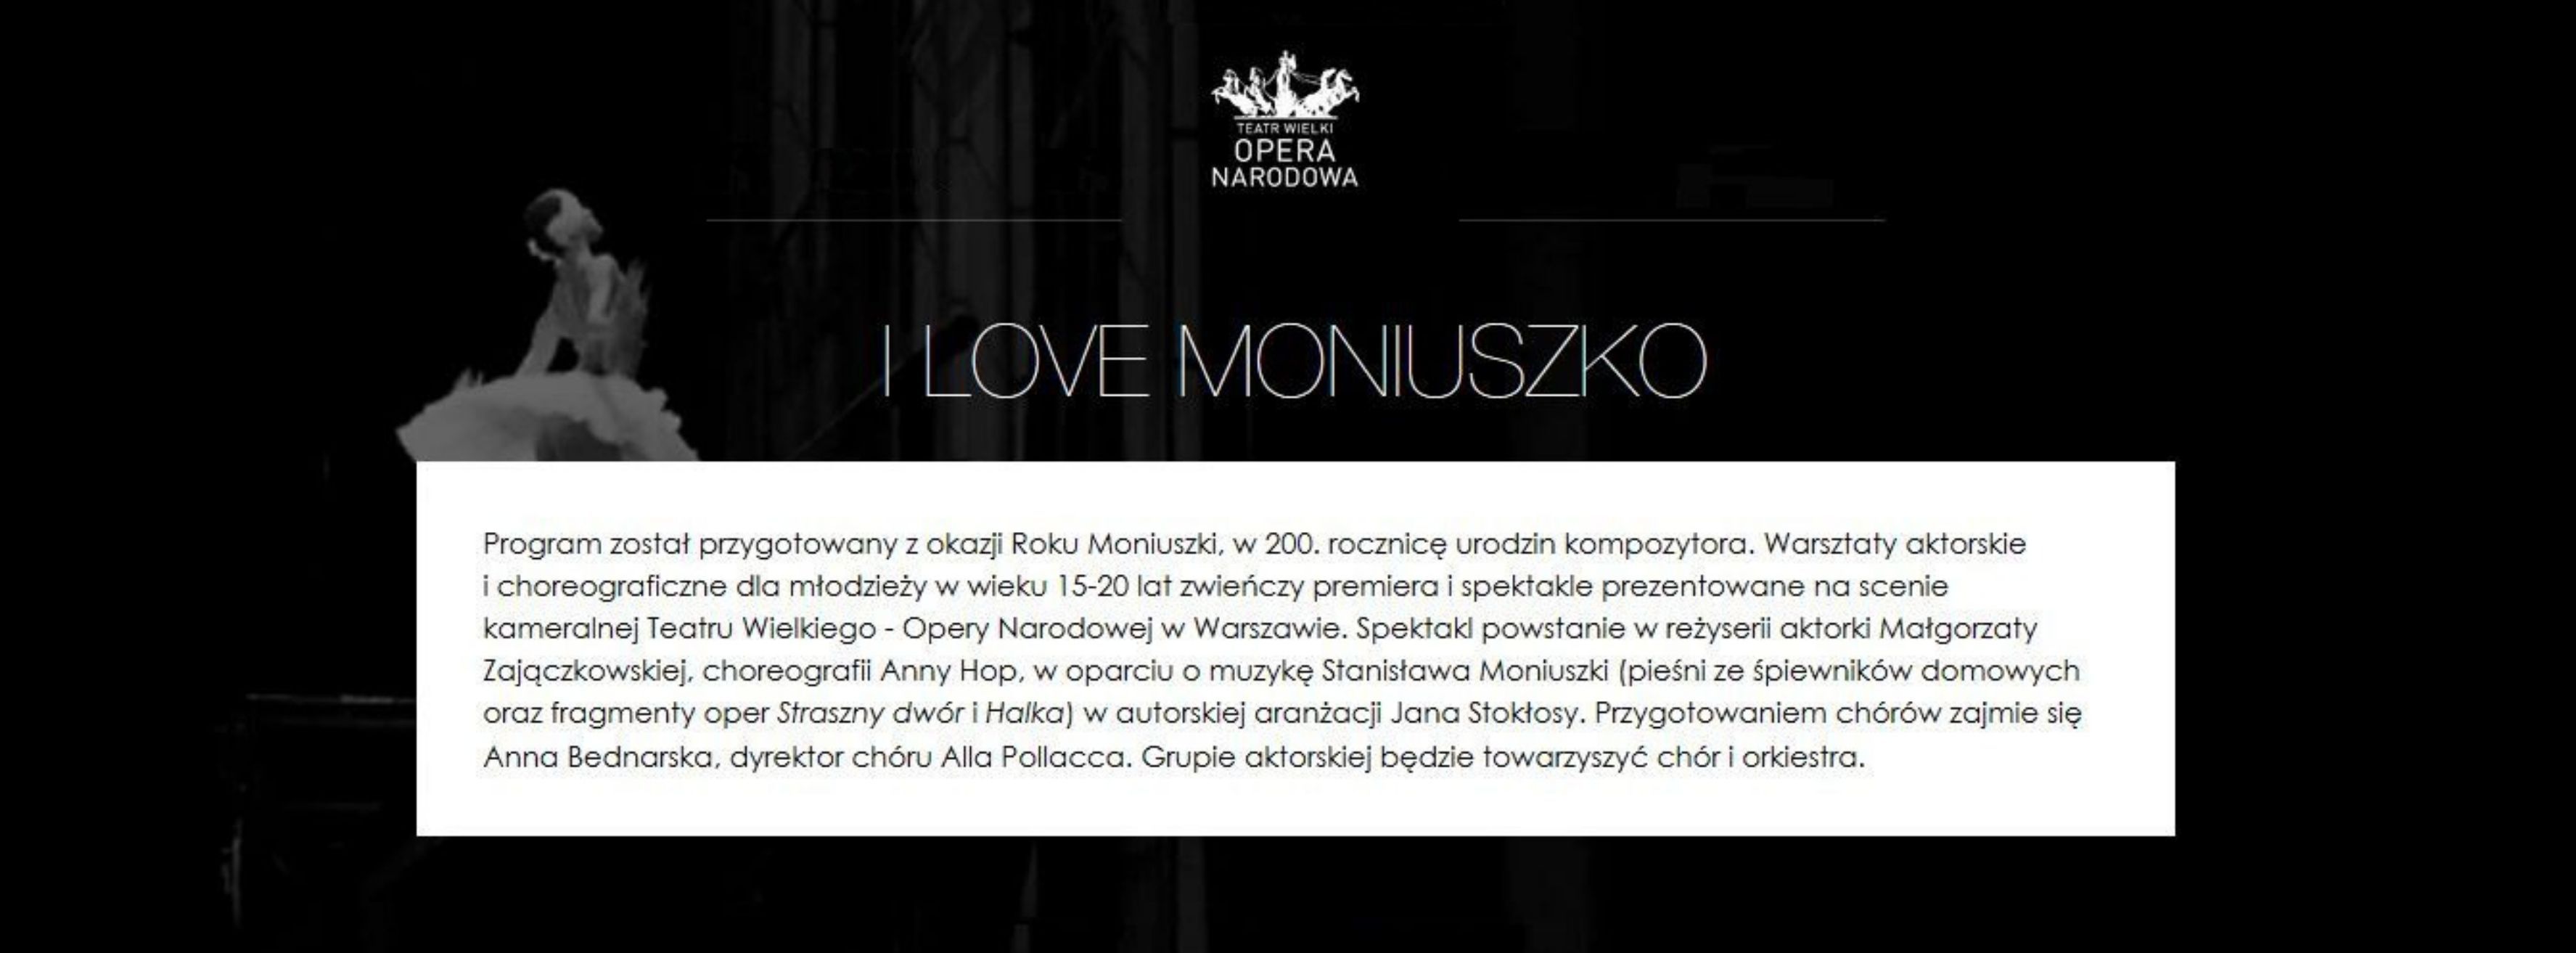 I love Moniuszko – projekt Teatru Wielkiego – Opery Narodowej